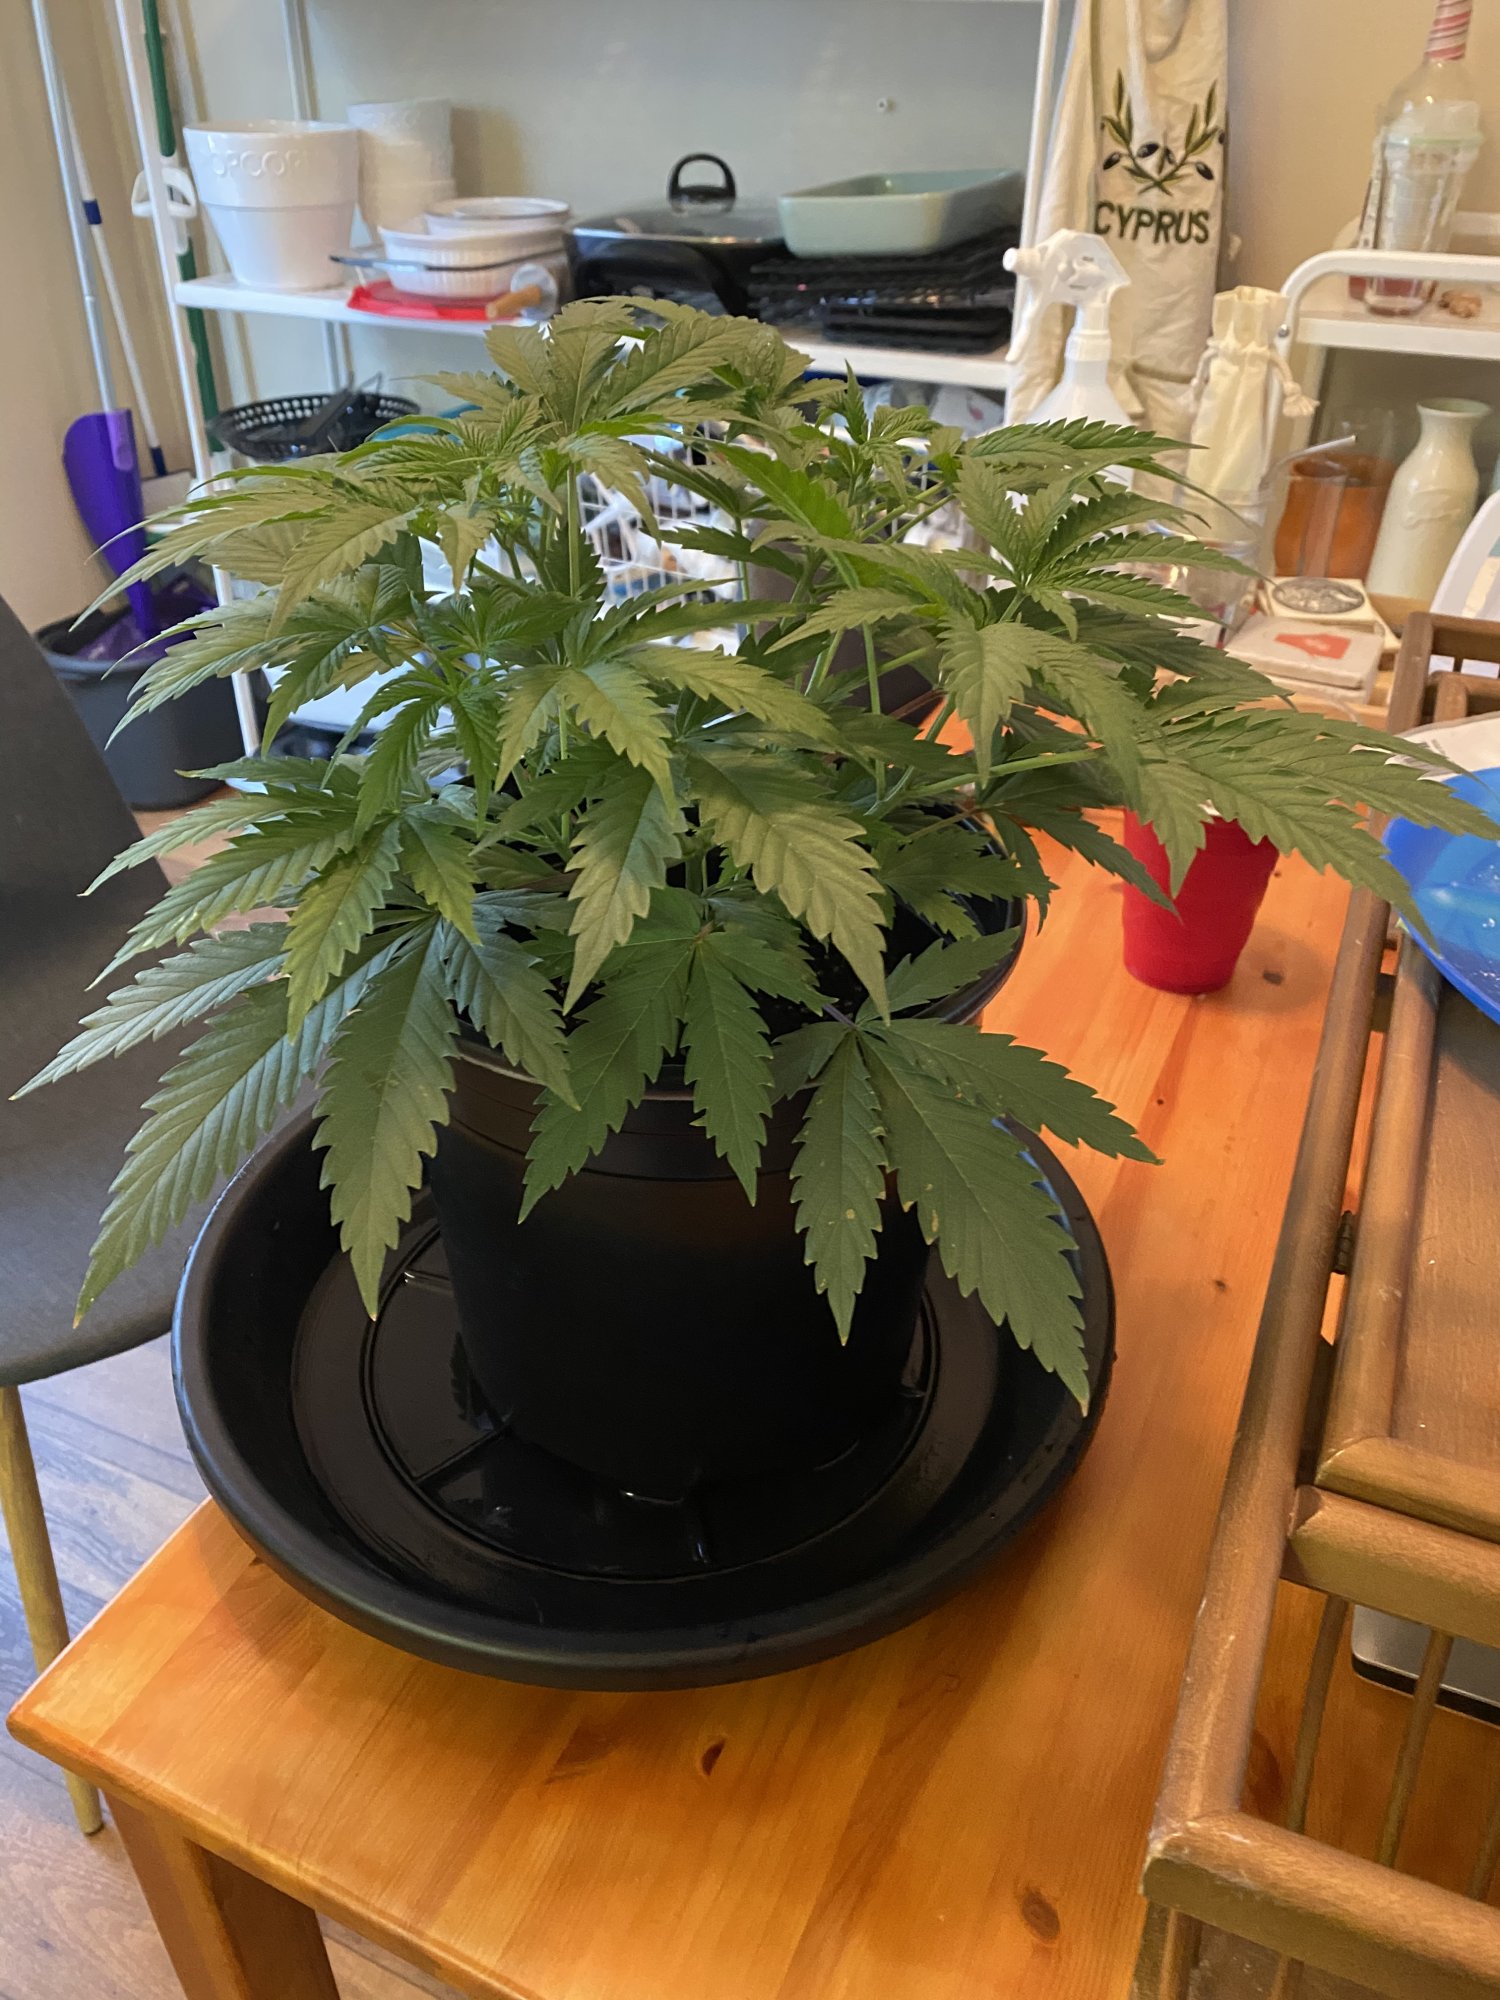 New grower   first grow update 3